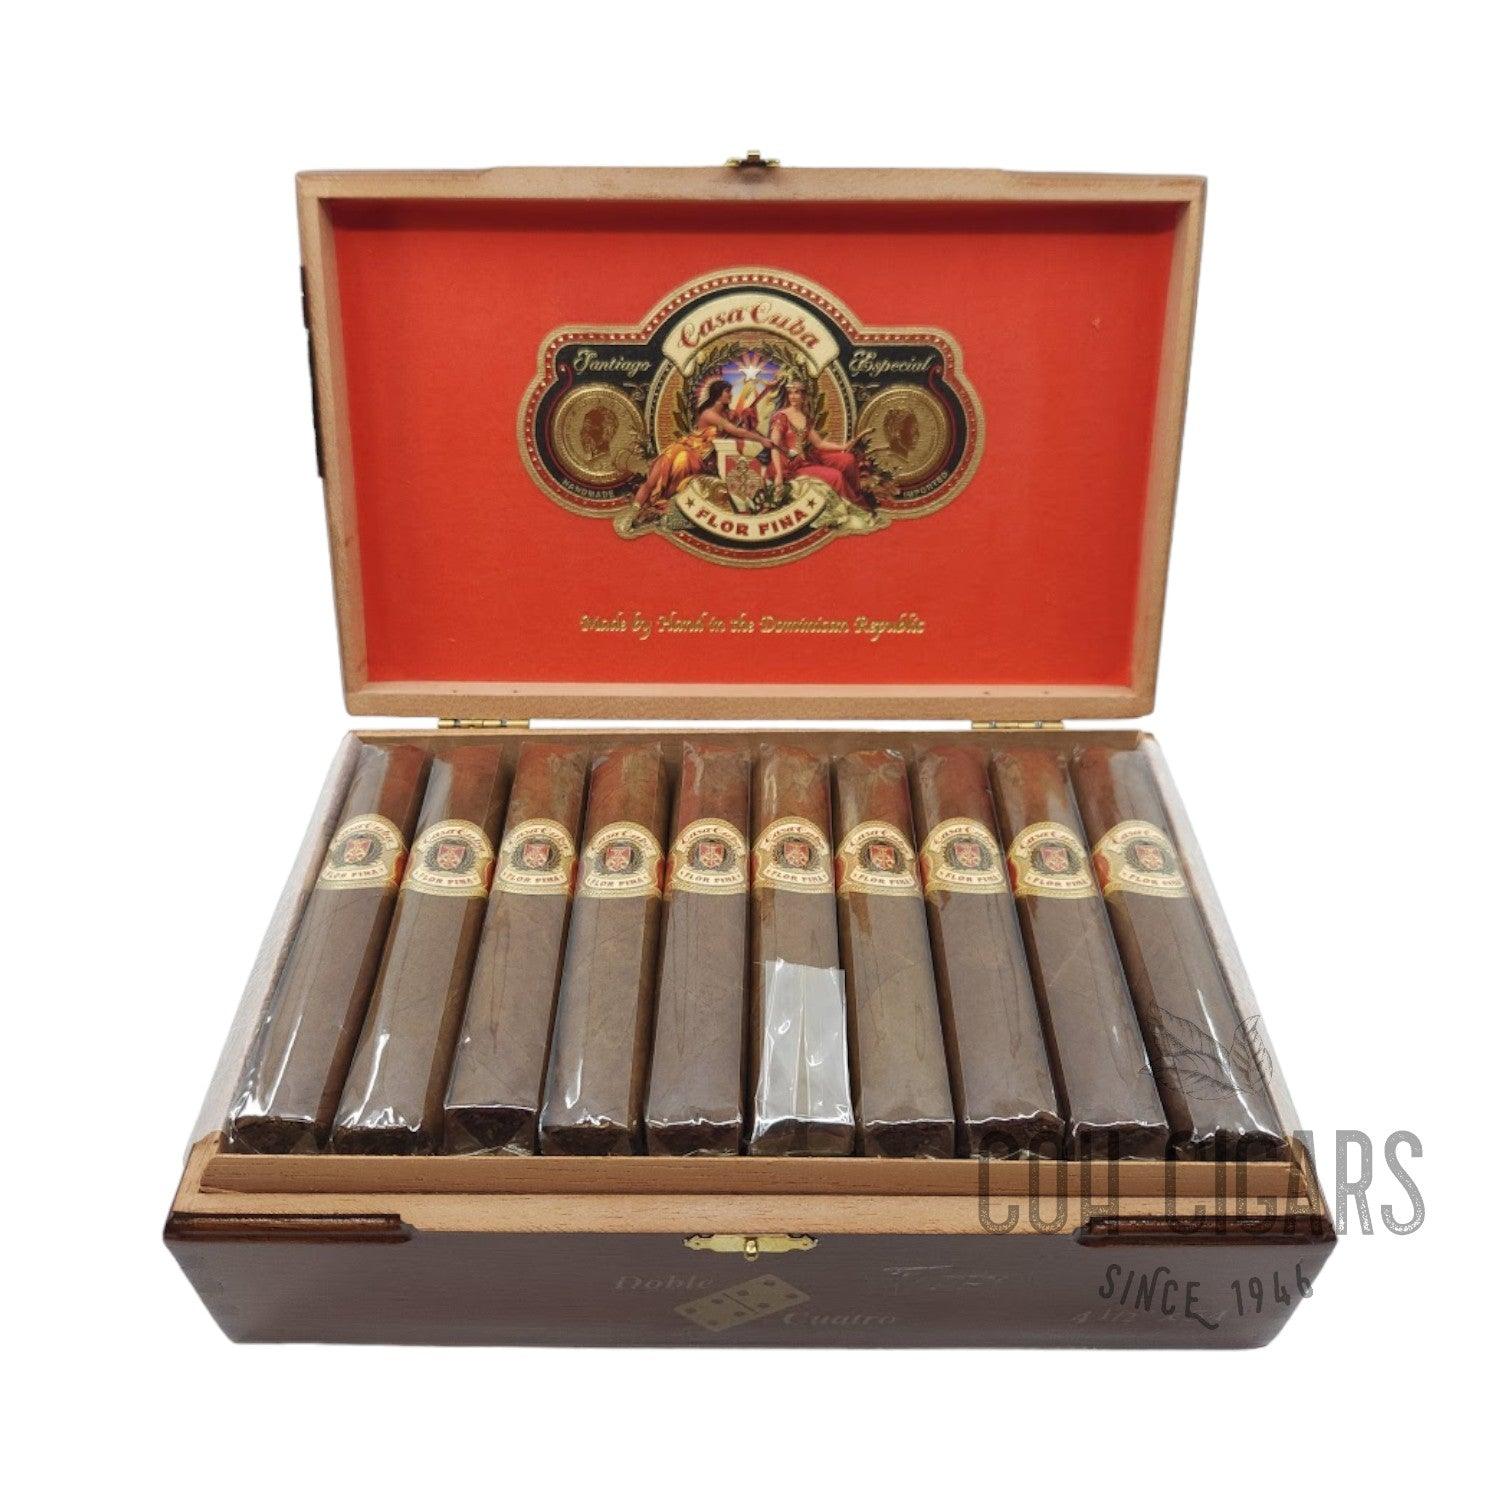 Arturo Fuente Cigar | Casa Cuba Doble Cuatro | Box 30 - hk.cohcigars